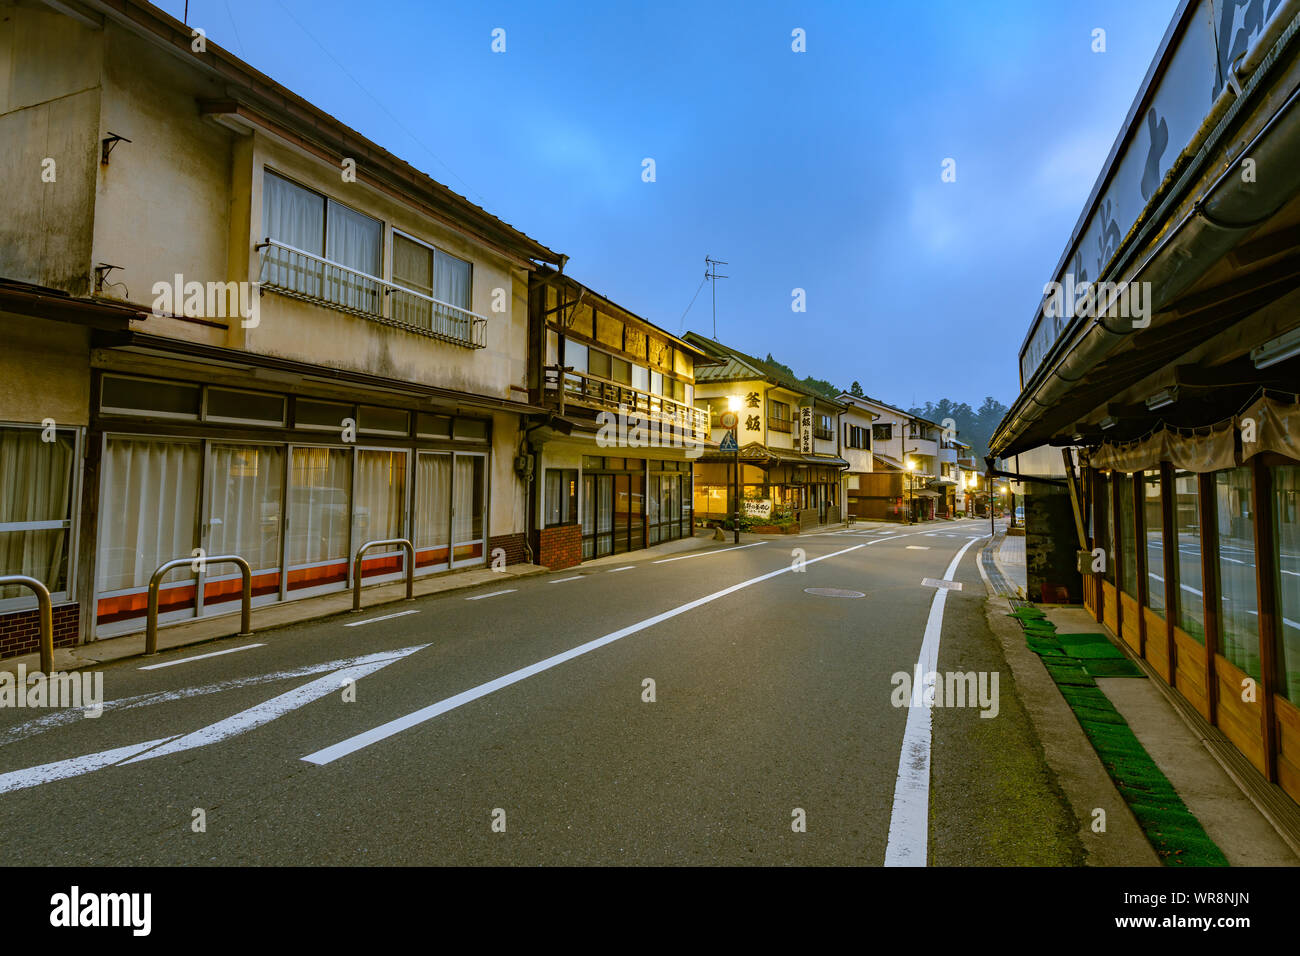 Wakayama, Japan - 23 July 2019: Evening view of the old shops along the main road at Mount Koyasan. Stock Photo